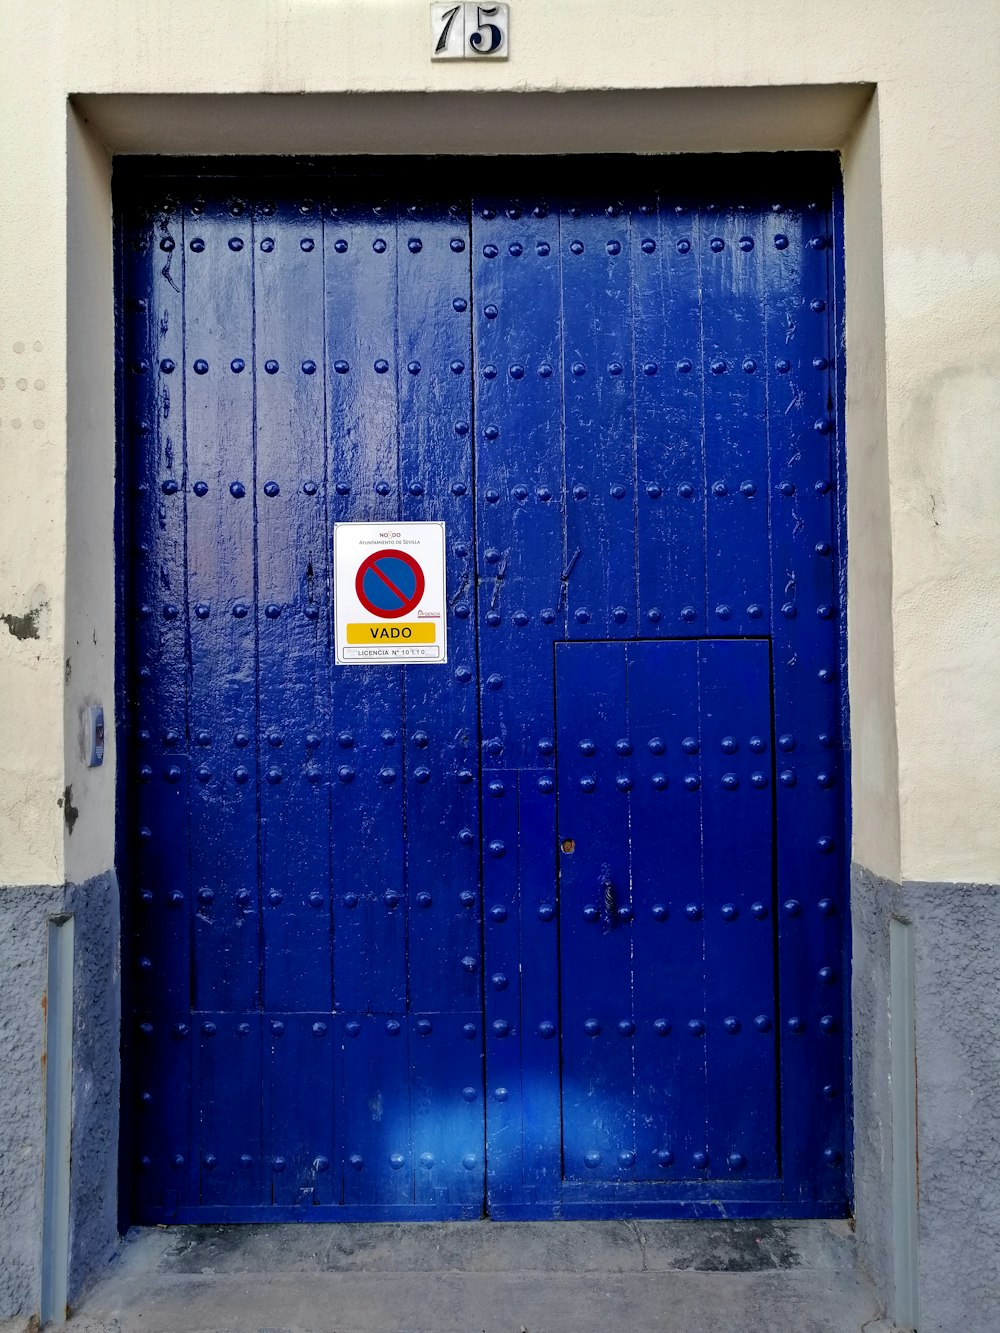 白と赤のステッカーが貼られた青い金属製のドア